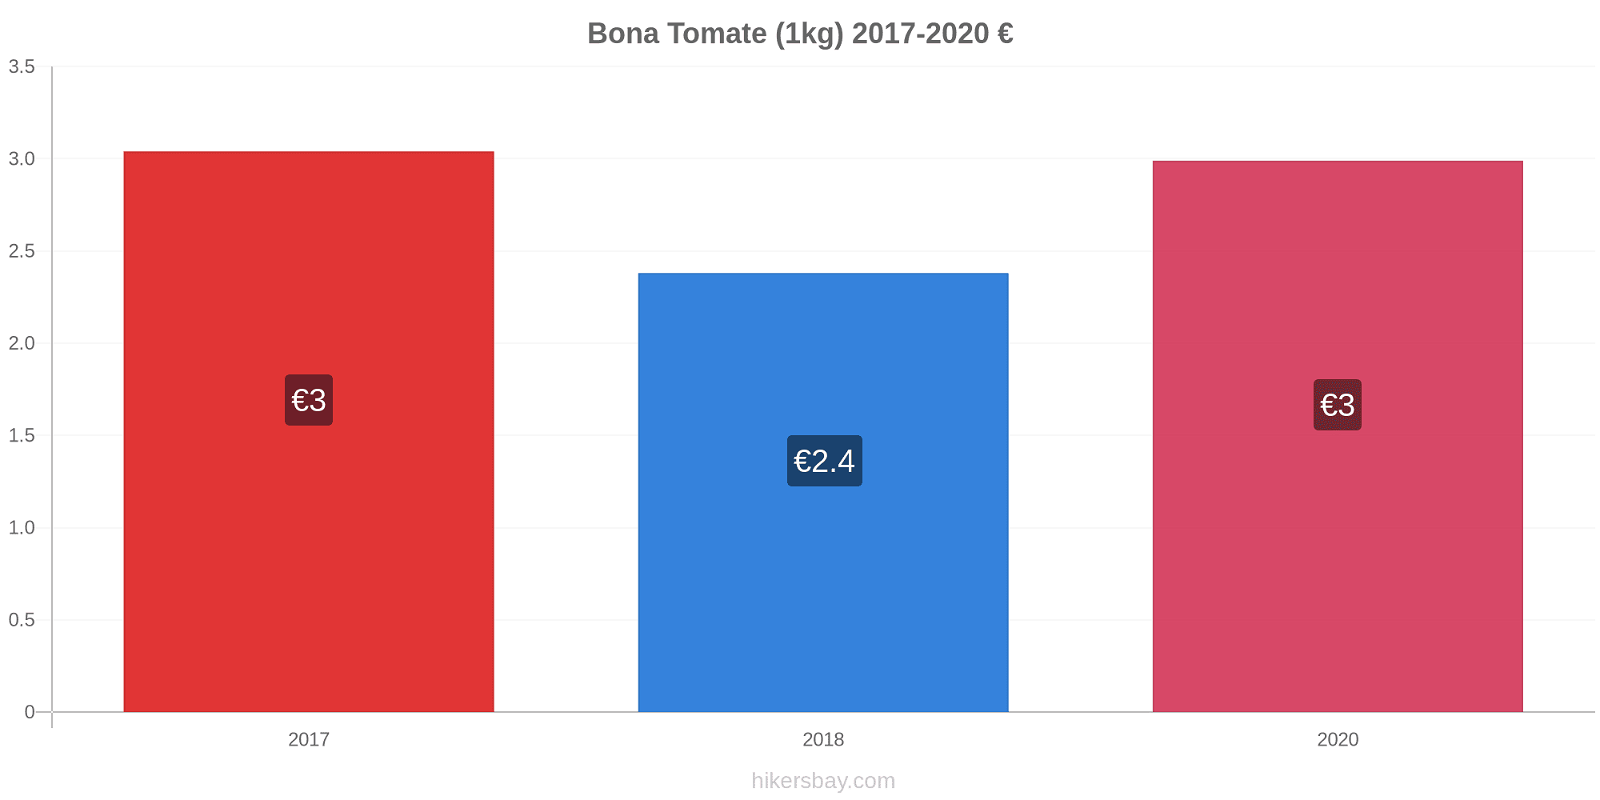 Bona variação de preço Tomate (1kg) hikersbay.com